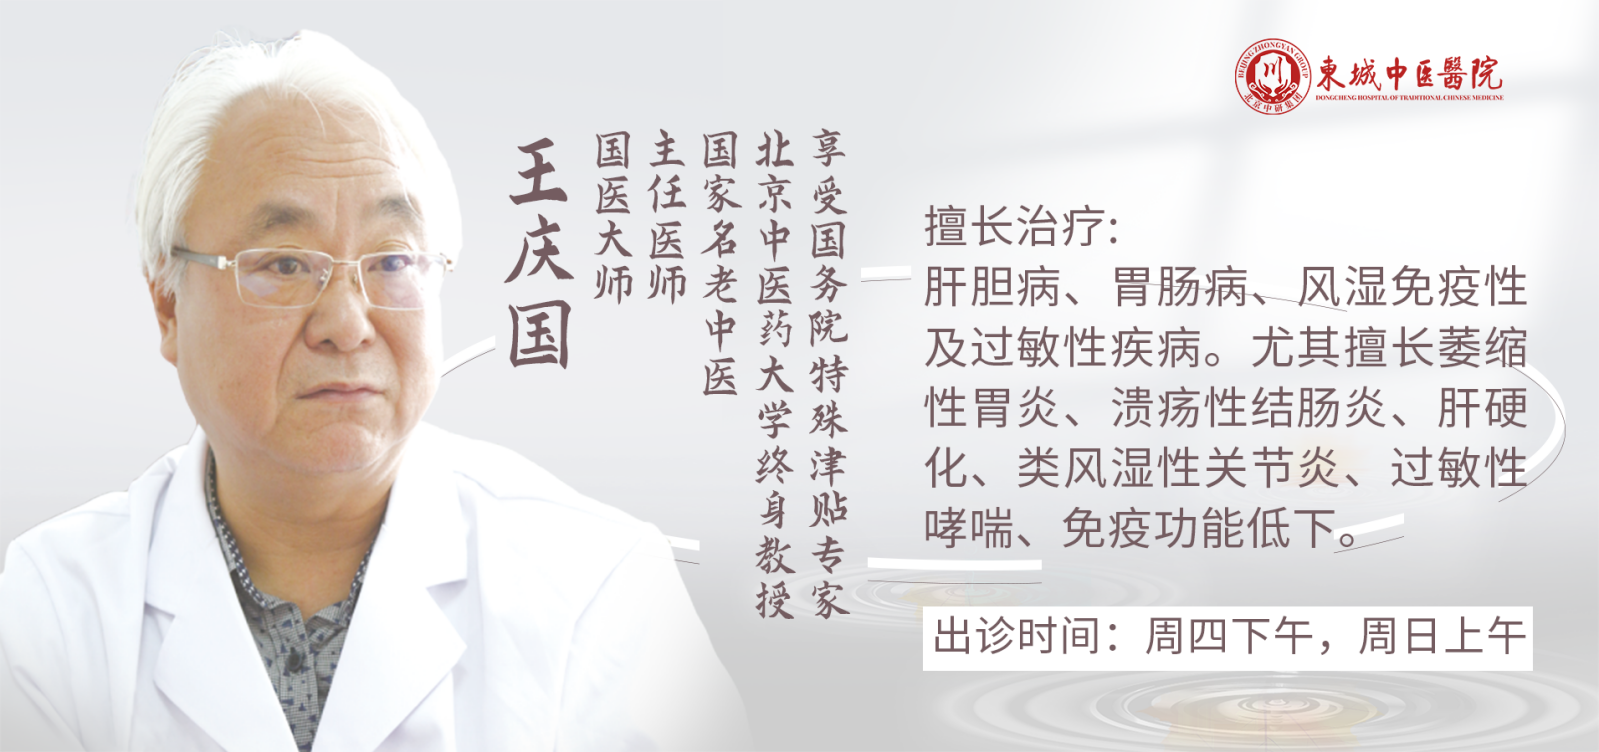 国医大师、东城中医医院特聘专家王庆国做客 健康北京 解析萎缩性胃炎